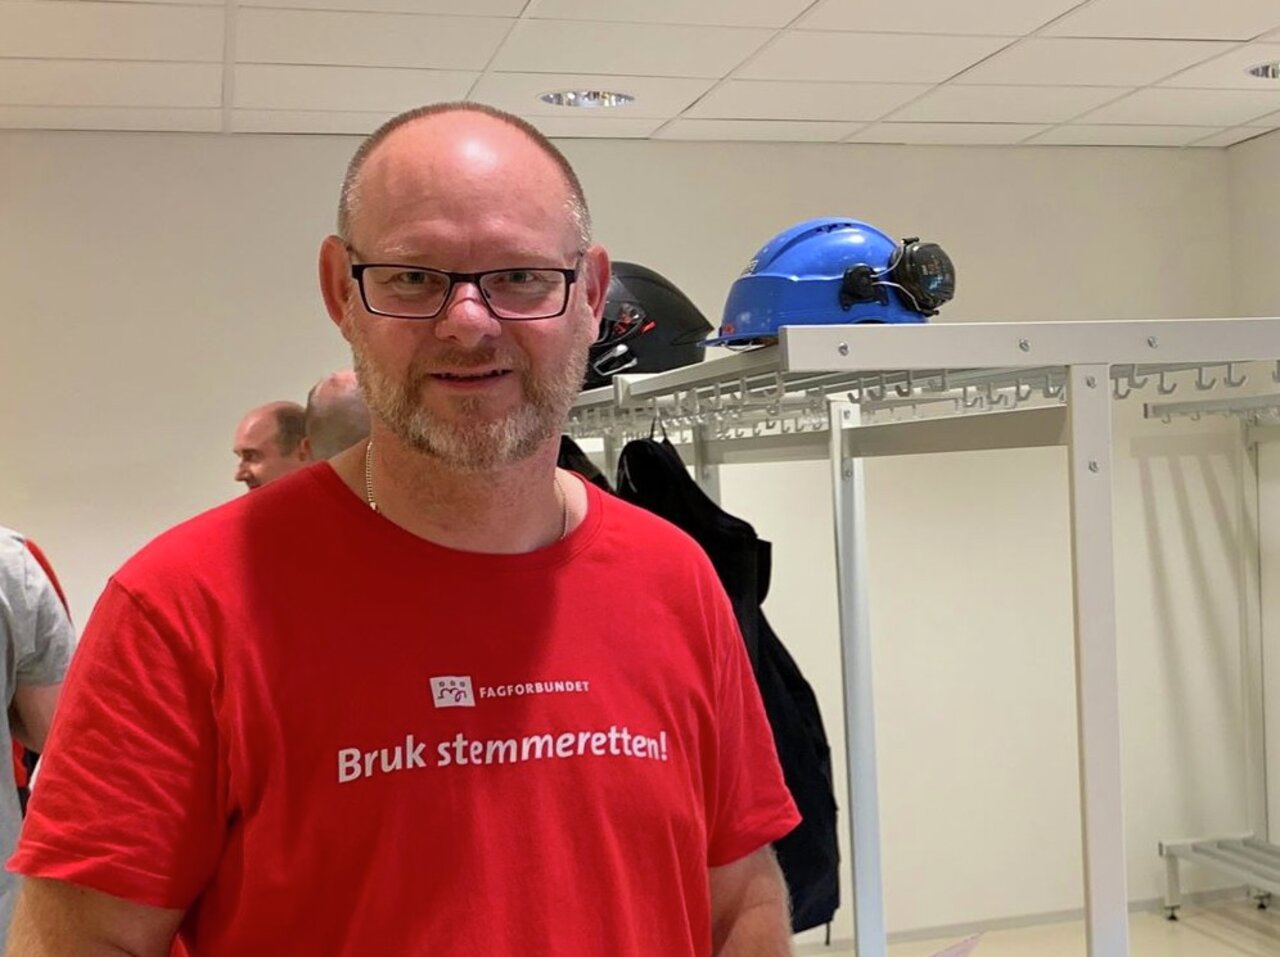 Håvard Engebretsen er utdannet rørelegger med svennebrev og nestleder i Fagforbundet Teknisk fagforening Oslo.